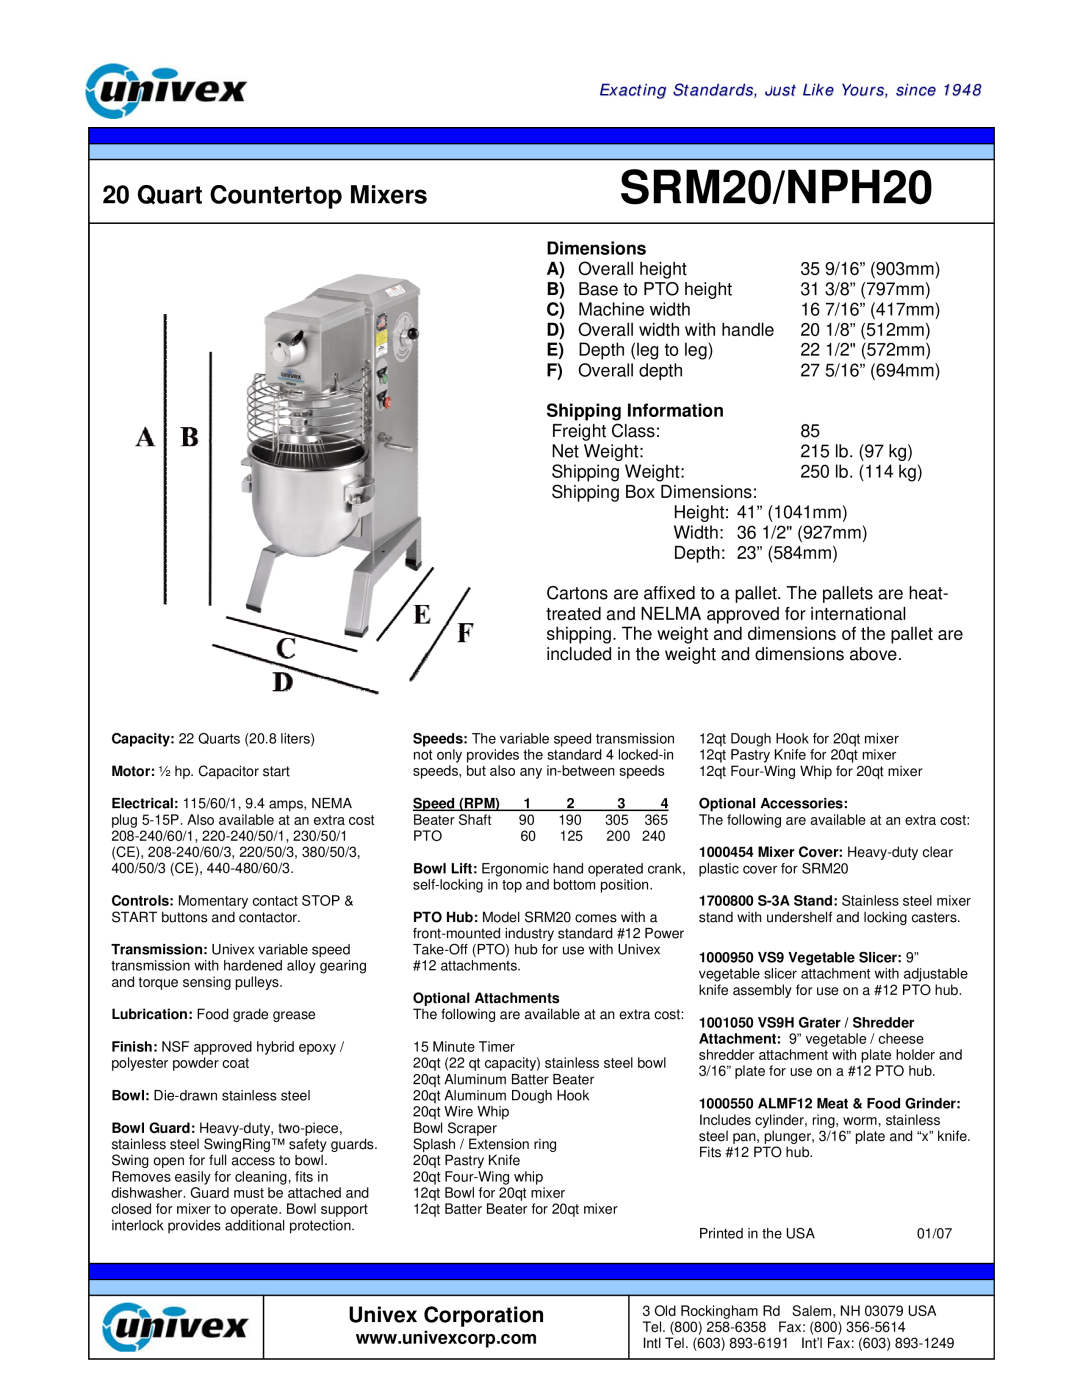 Univex manual Quart Countertop Mixers, Dimensions, Shipping Information, SRM20/NPH20, Univex Corporation 